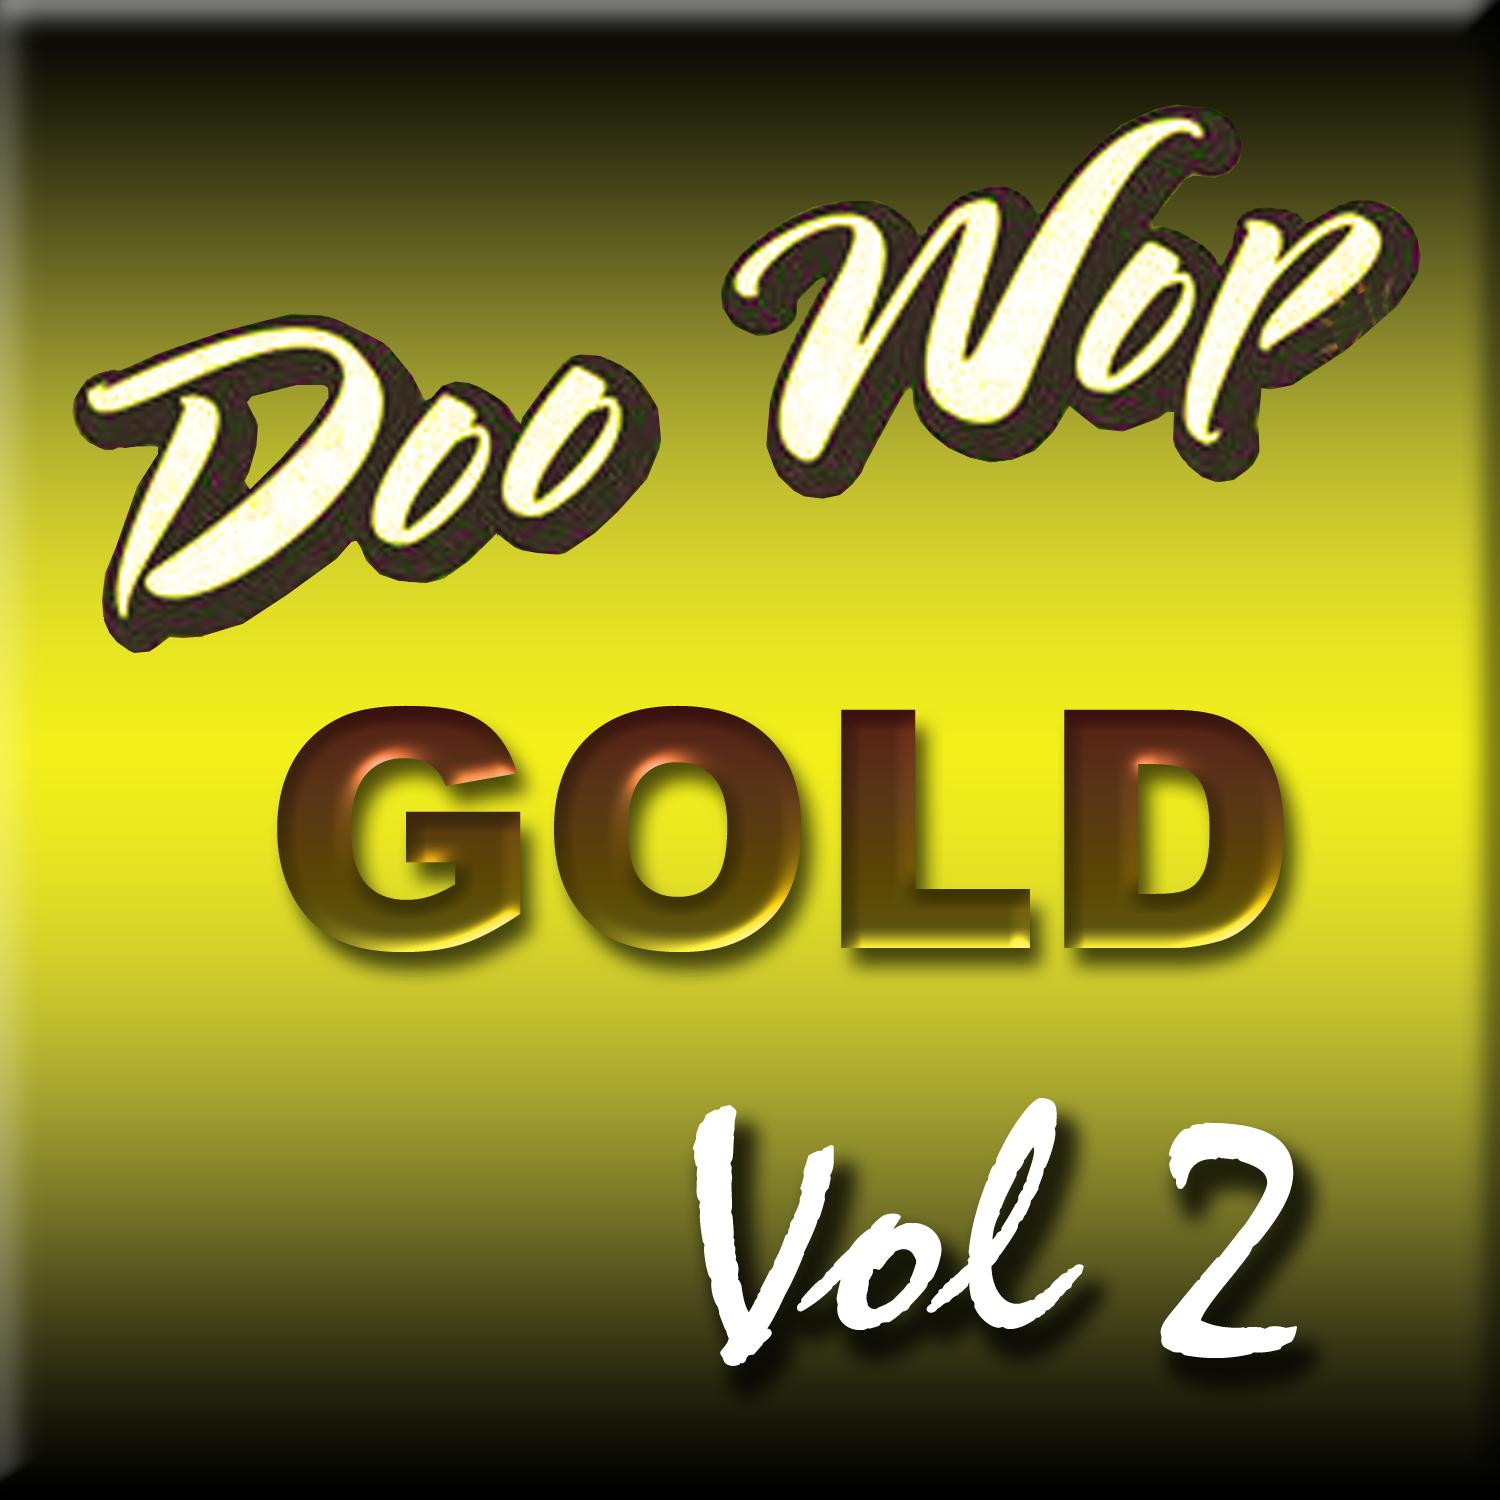 Doo Wop Gold Vol 2